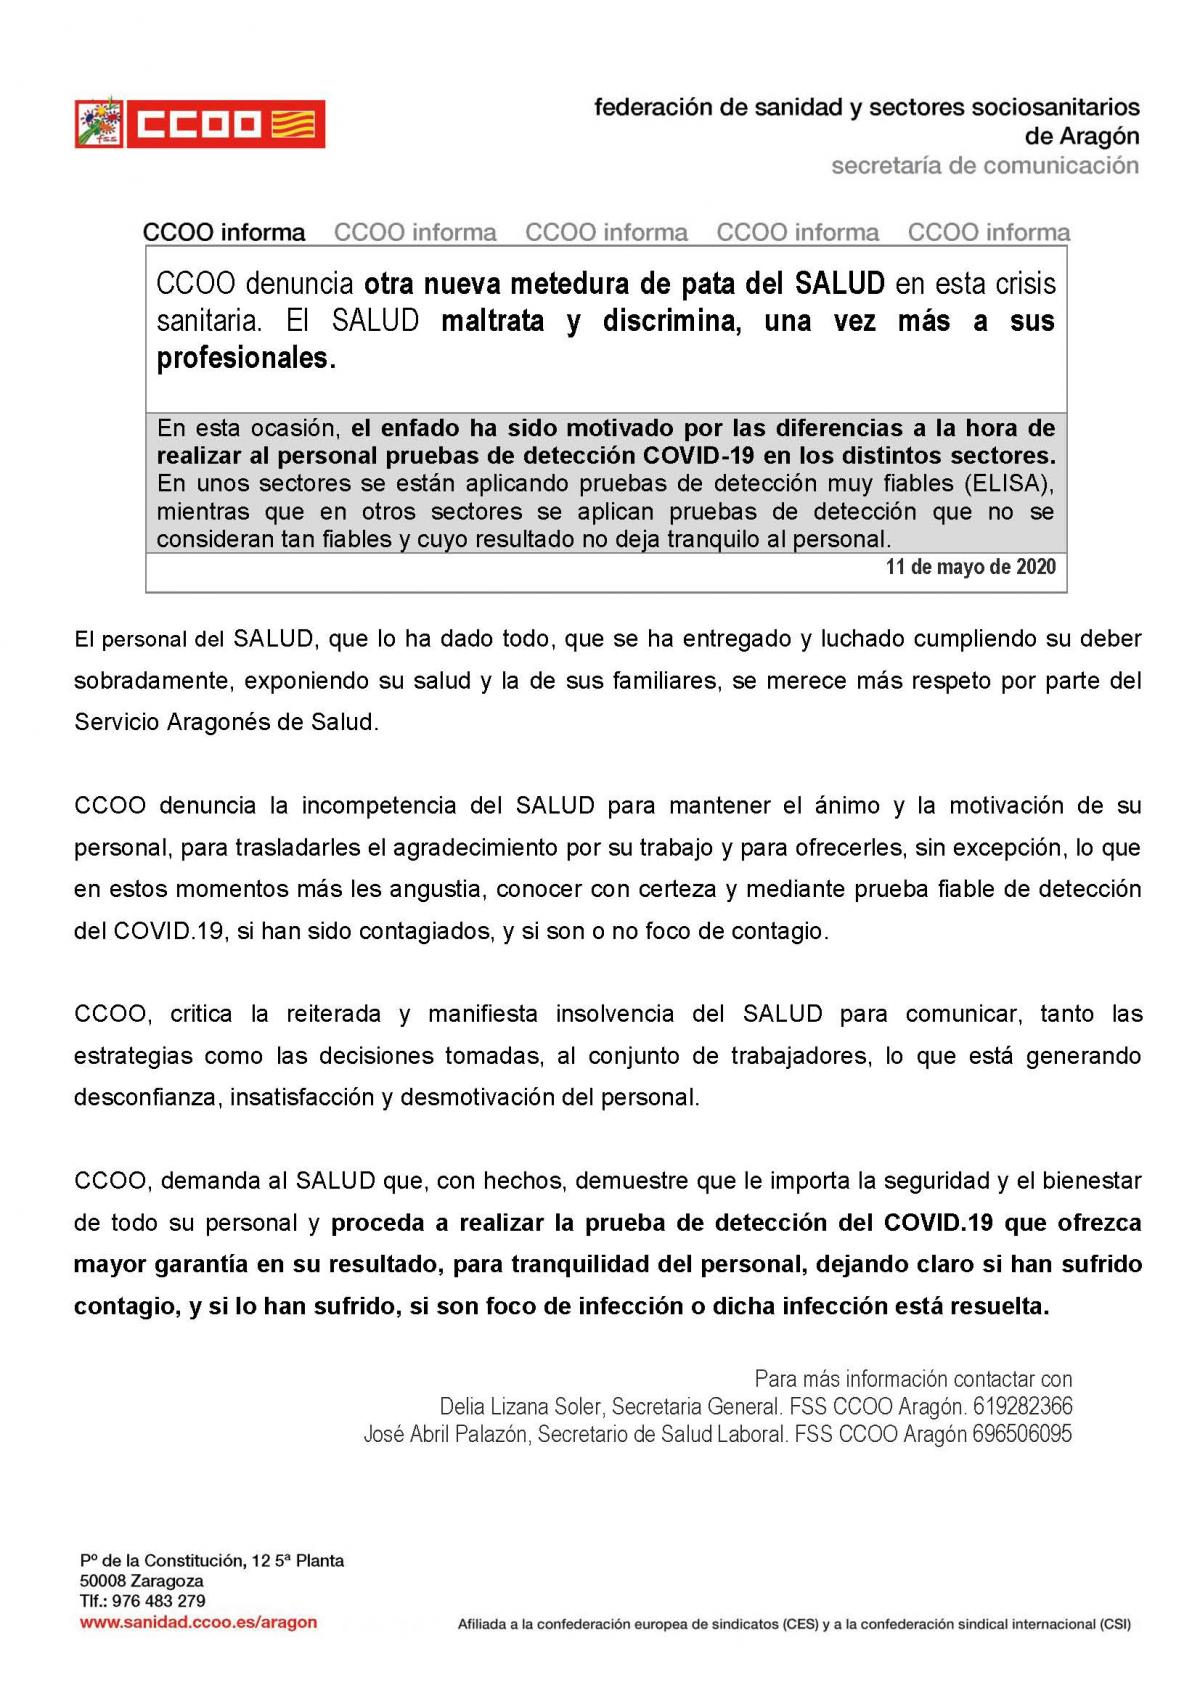 Nota de prensa FSS CCOO Aragón sobre diferencias de criterio en realización de pruebas de detección COVID-19 al personal de ámbito sanitario en los distintos sectores del SALUD